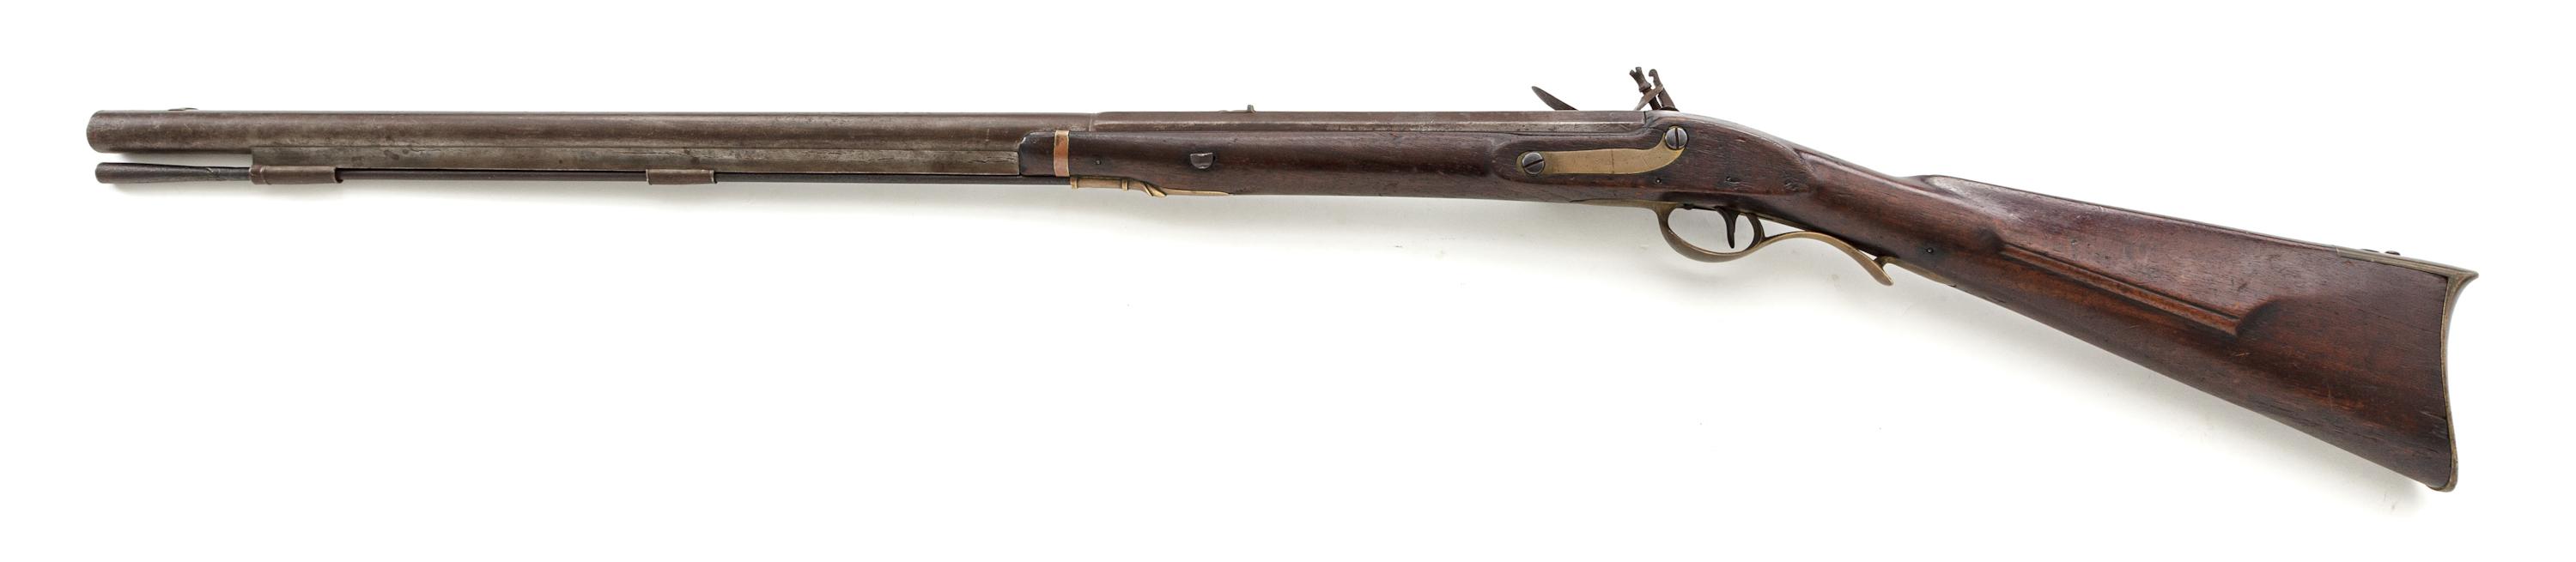 War of 1812 Harpers Ferry Model 1803 Flintlock Rifle